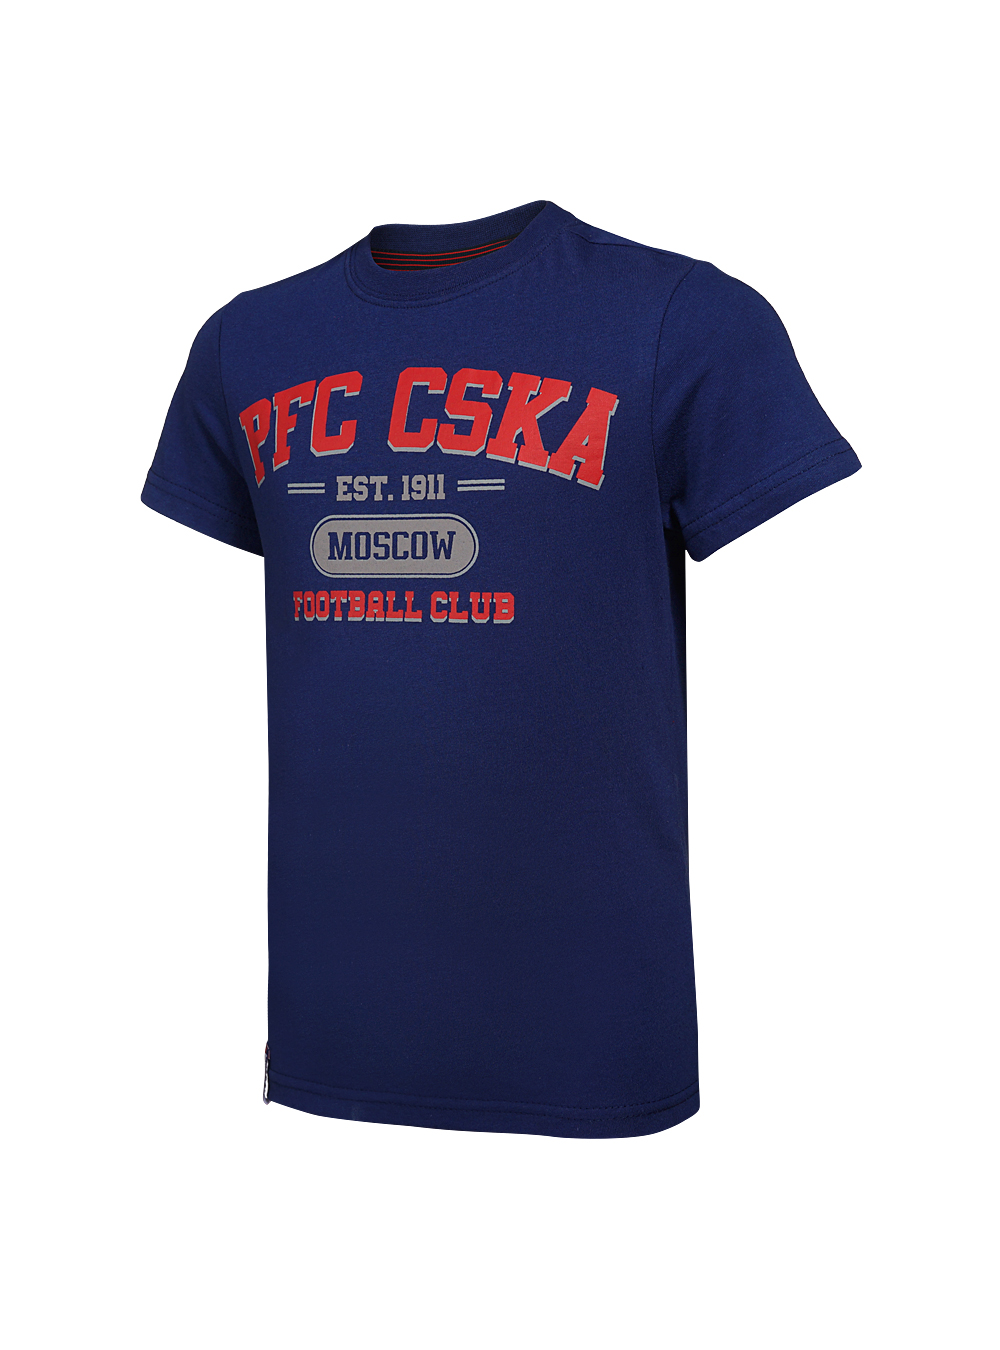 Футболка детская  PFC CSKA Moscow синяя (128) ПФК ЦСКА CSK18031